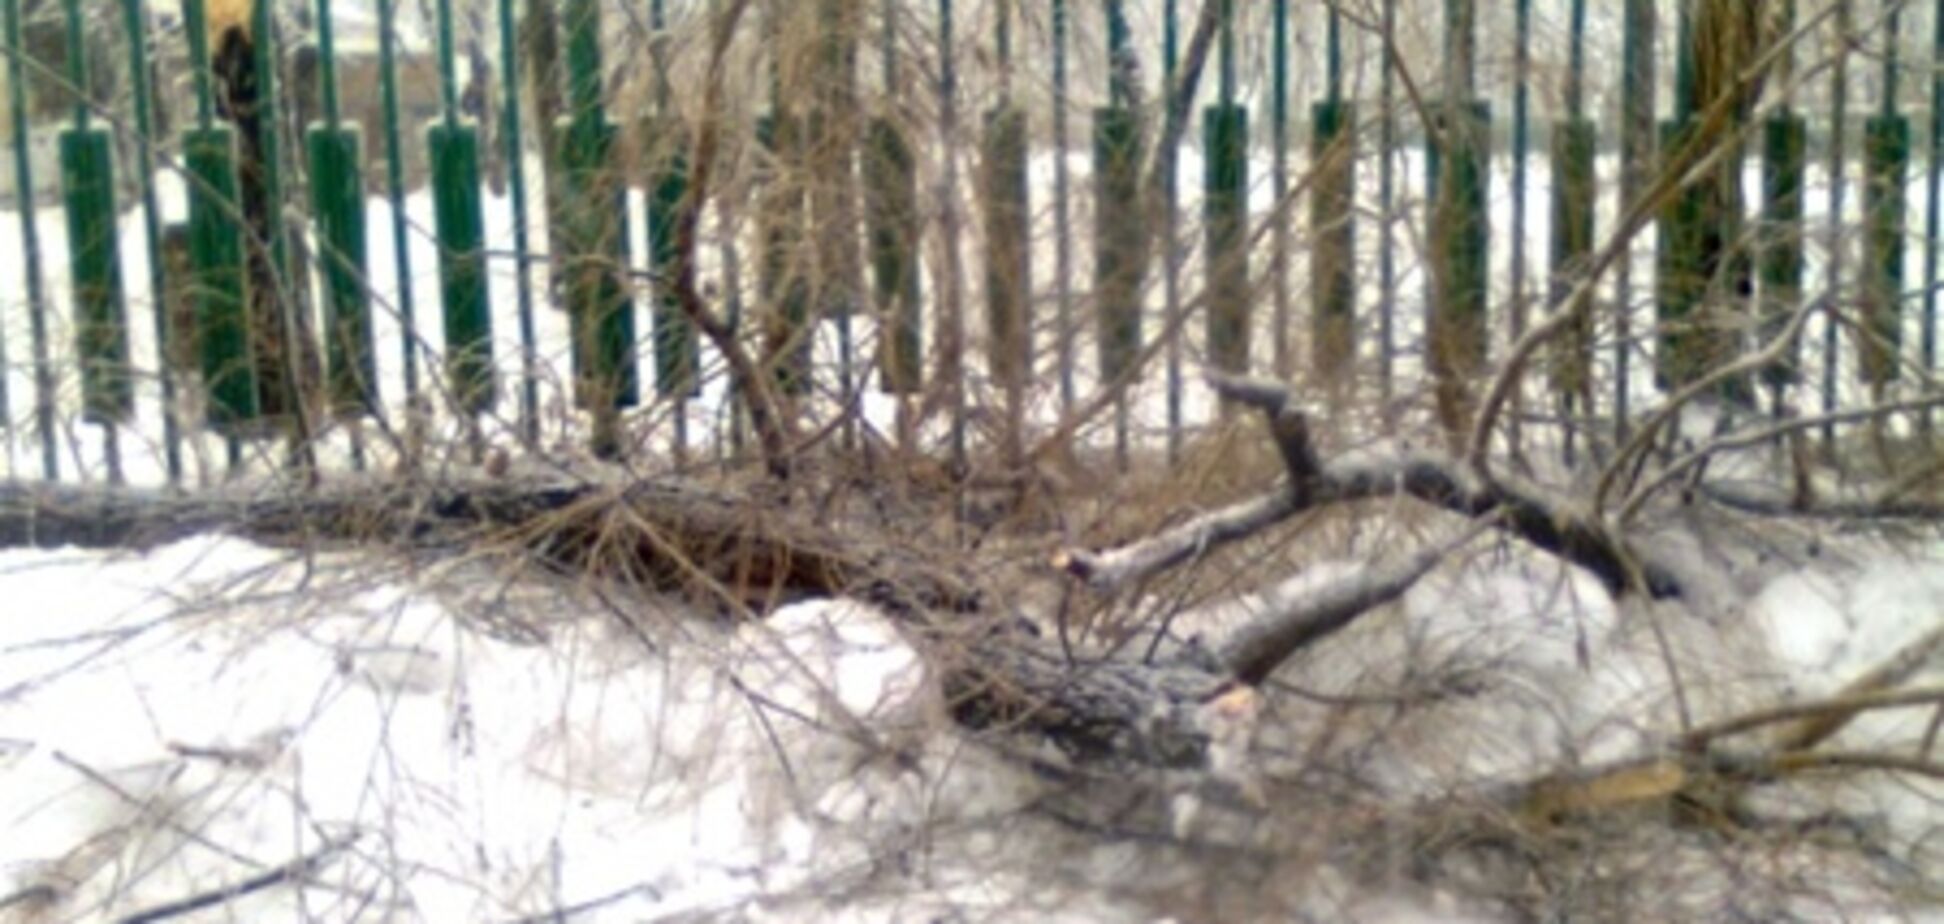 В Киеве снегопад валит деревья и торговые палатки